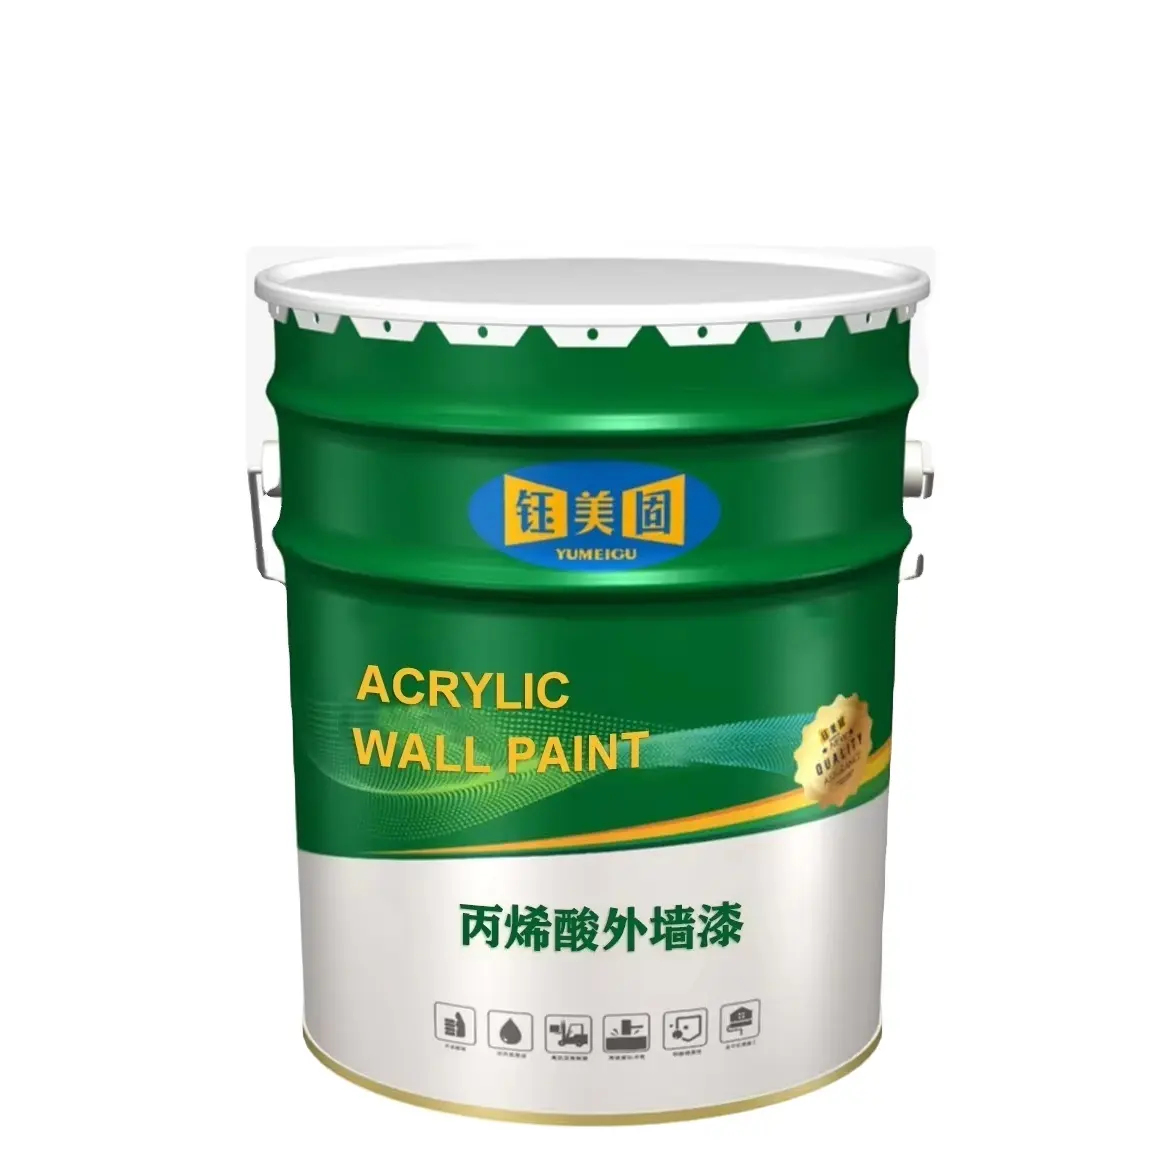 ZS0008 Pintura de revestimiento de pared exterior similar a la piedra acrílica Producto de revestimiento y pintura Premium